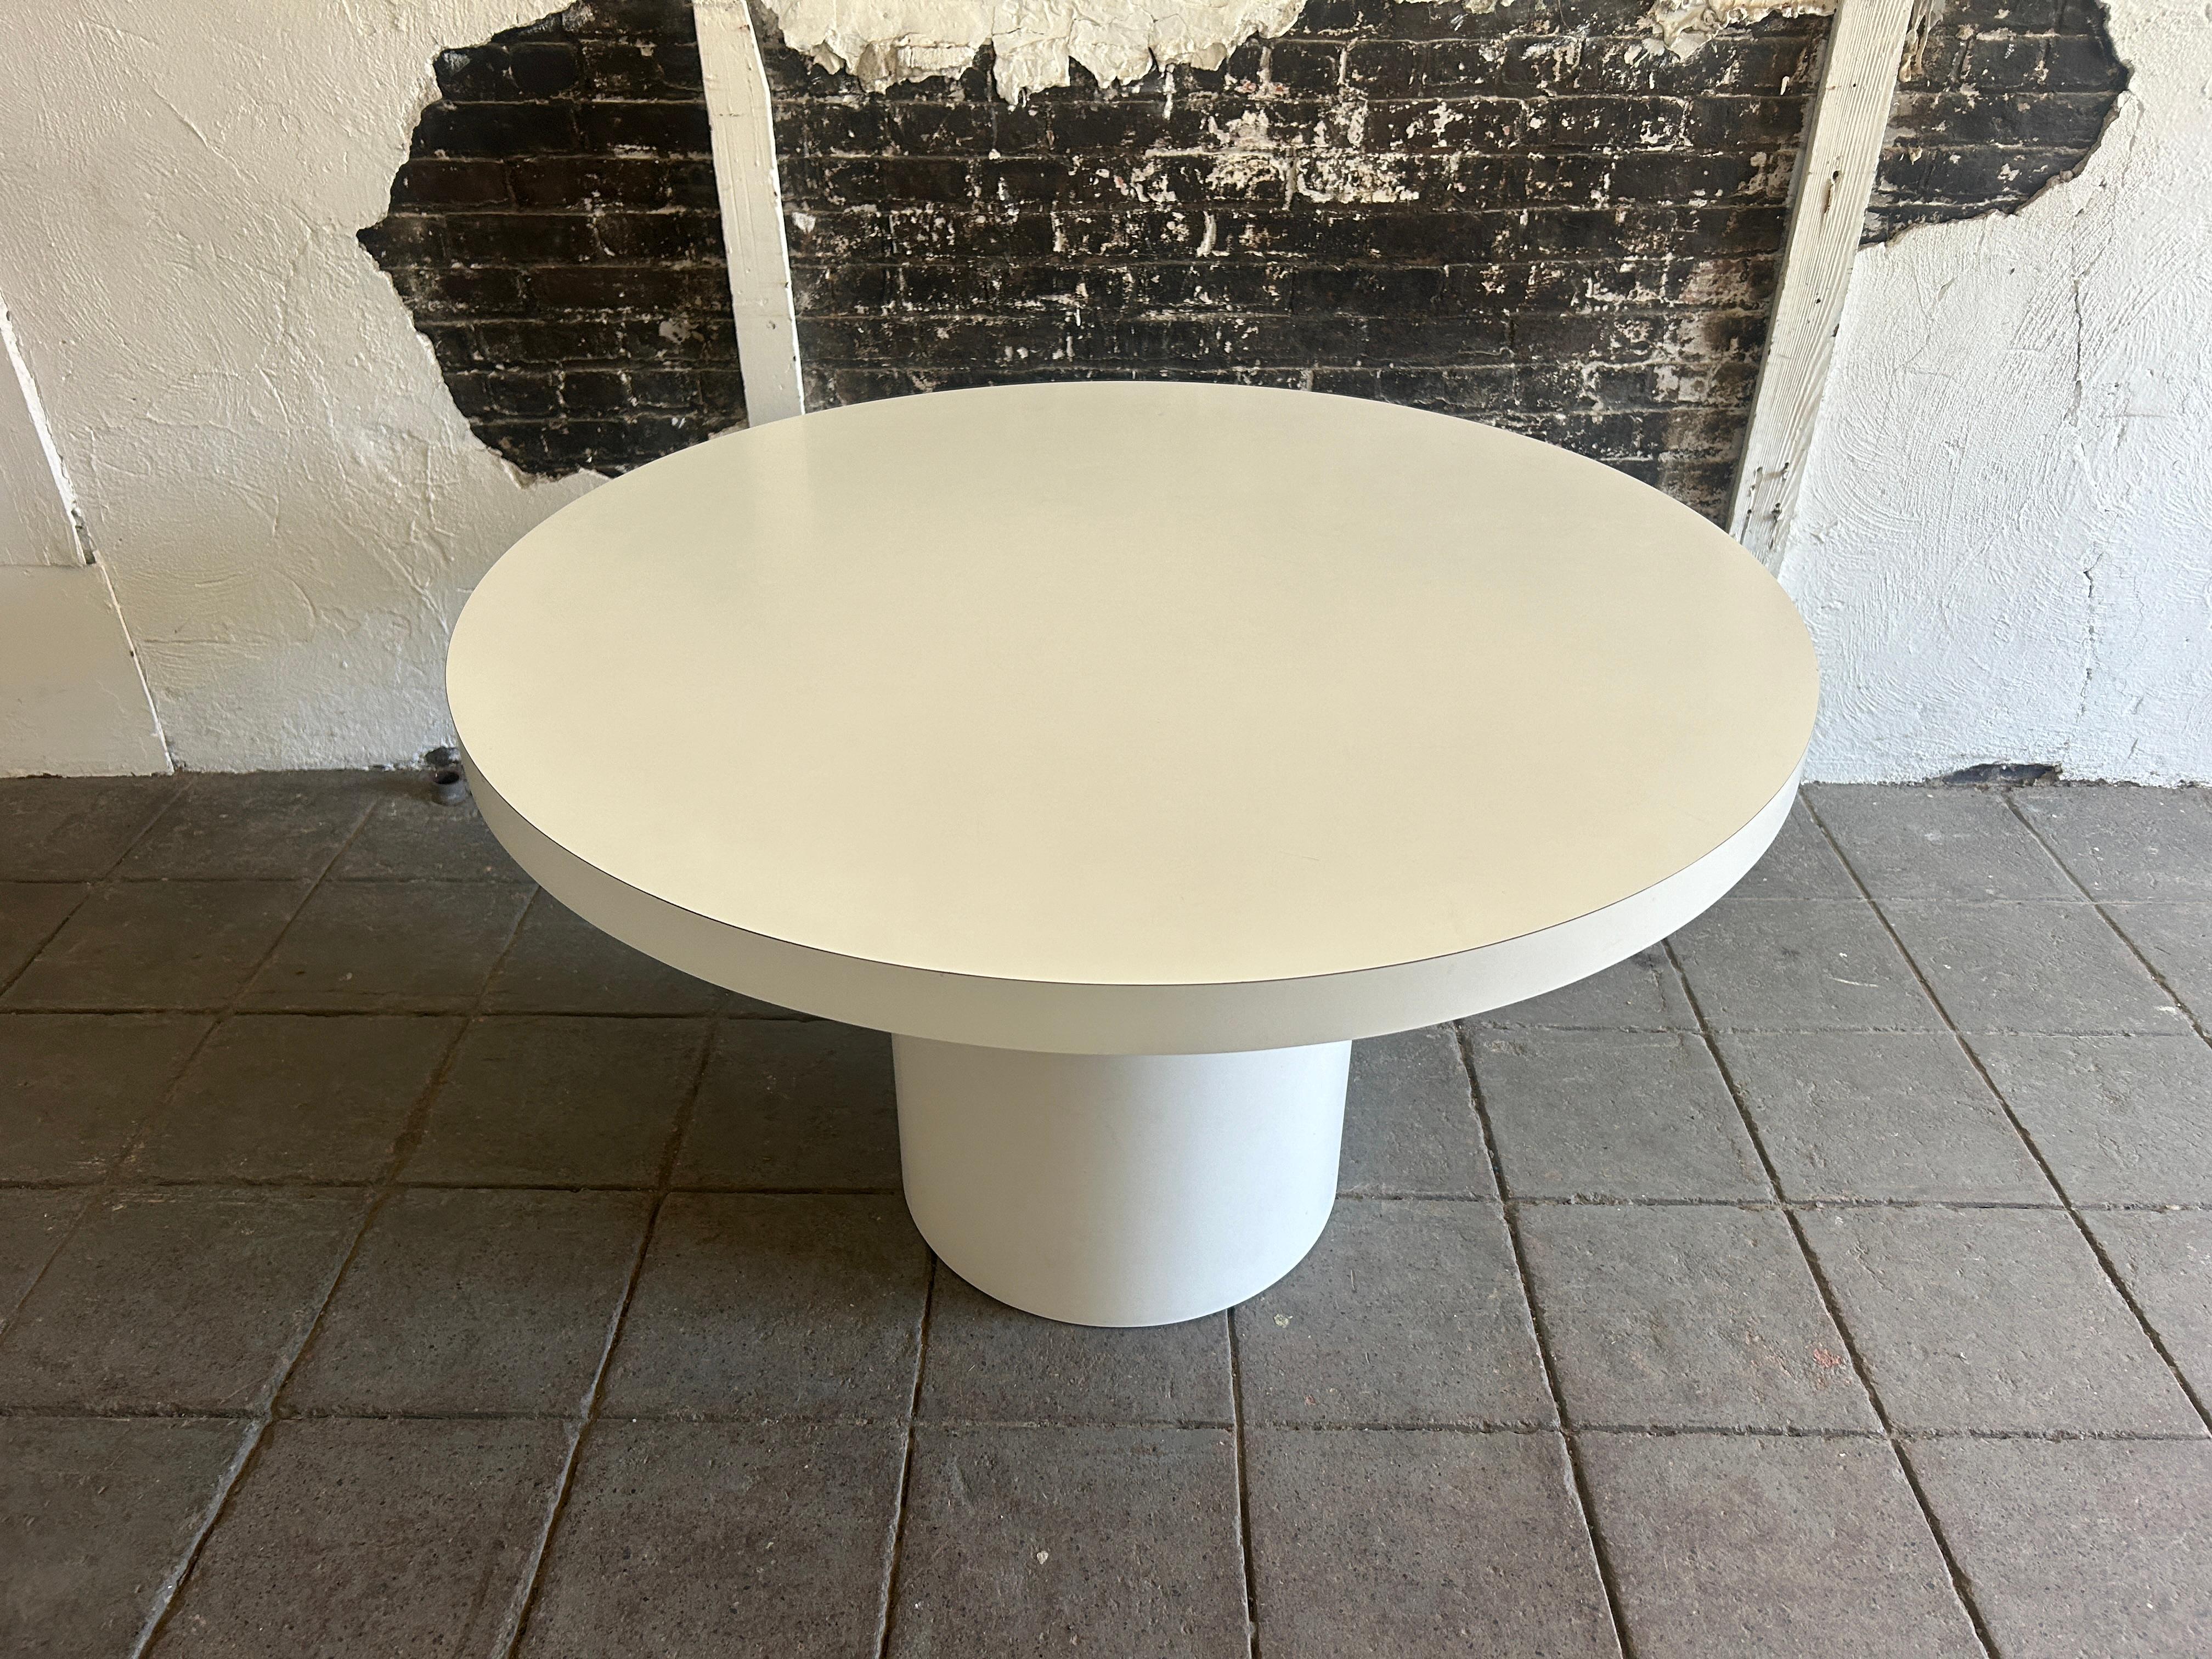 Simple Post Modern table de salle à manger ronde en stratifié blanc. Stratifié blanc avec base ronde blanche. Pas de copeaux, très propre. Dessus et base ronds. Fabriqué vers les années 1980 Situé à Brooklyn NYC.

Dimensions : 48